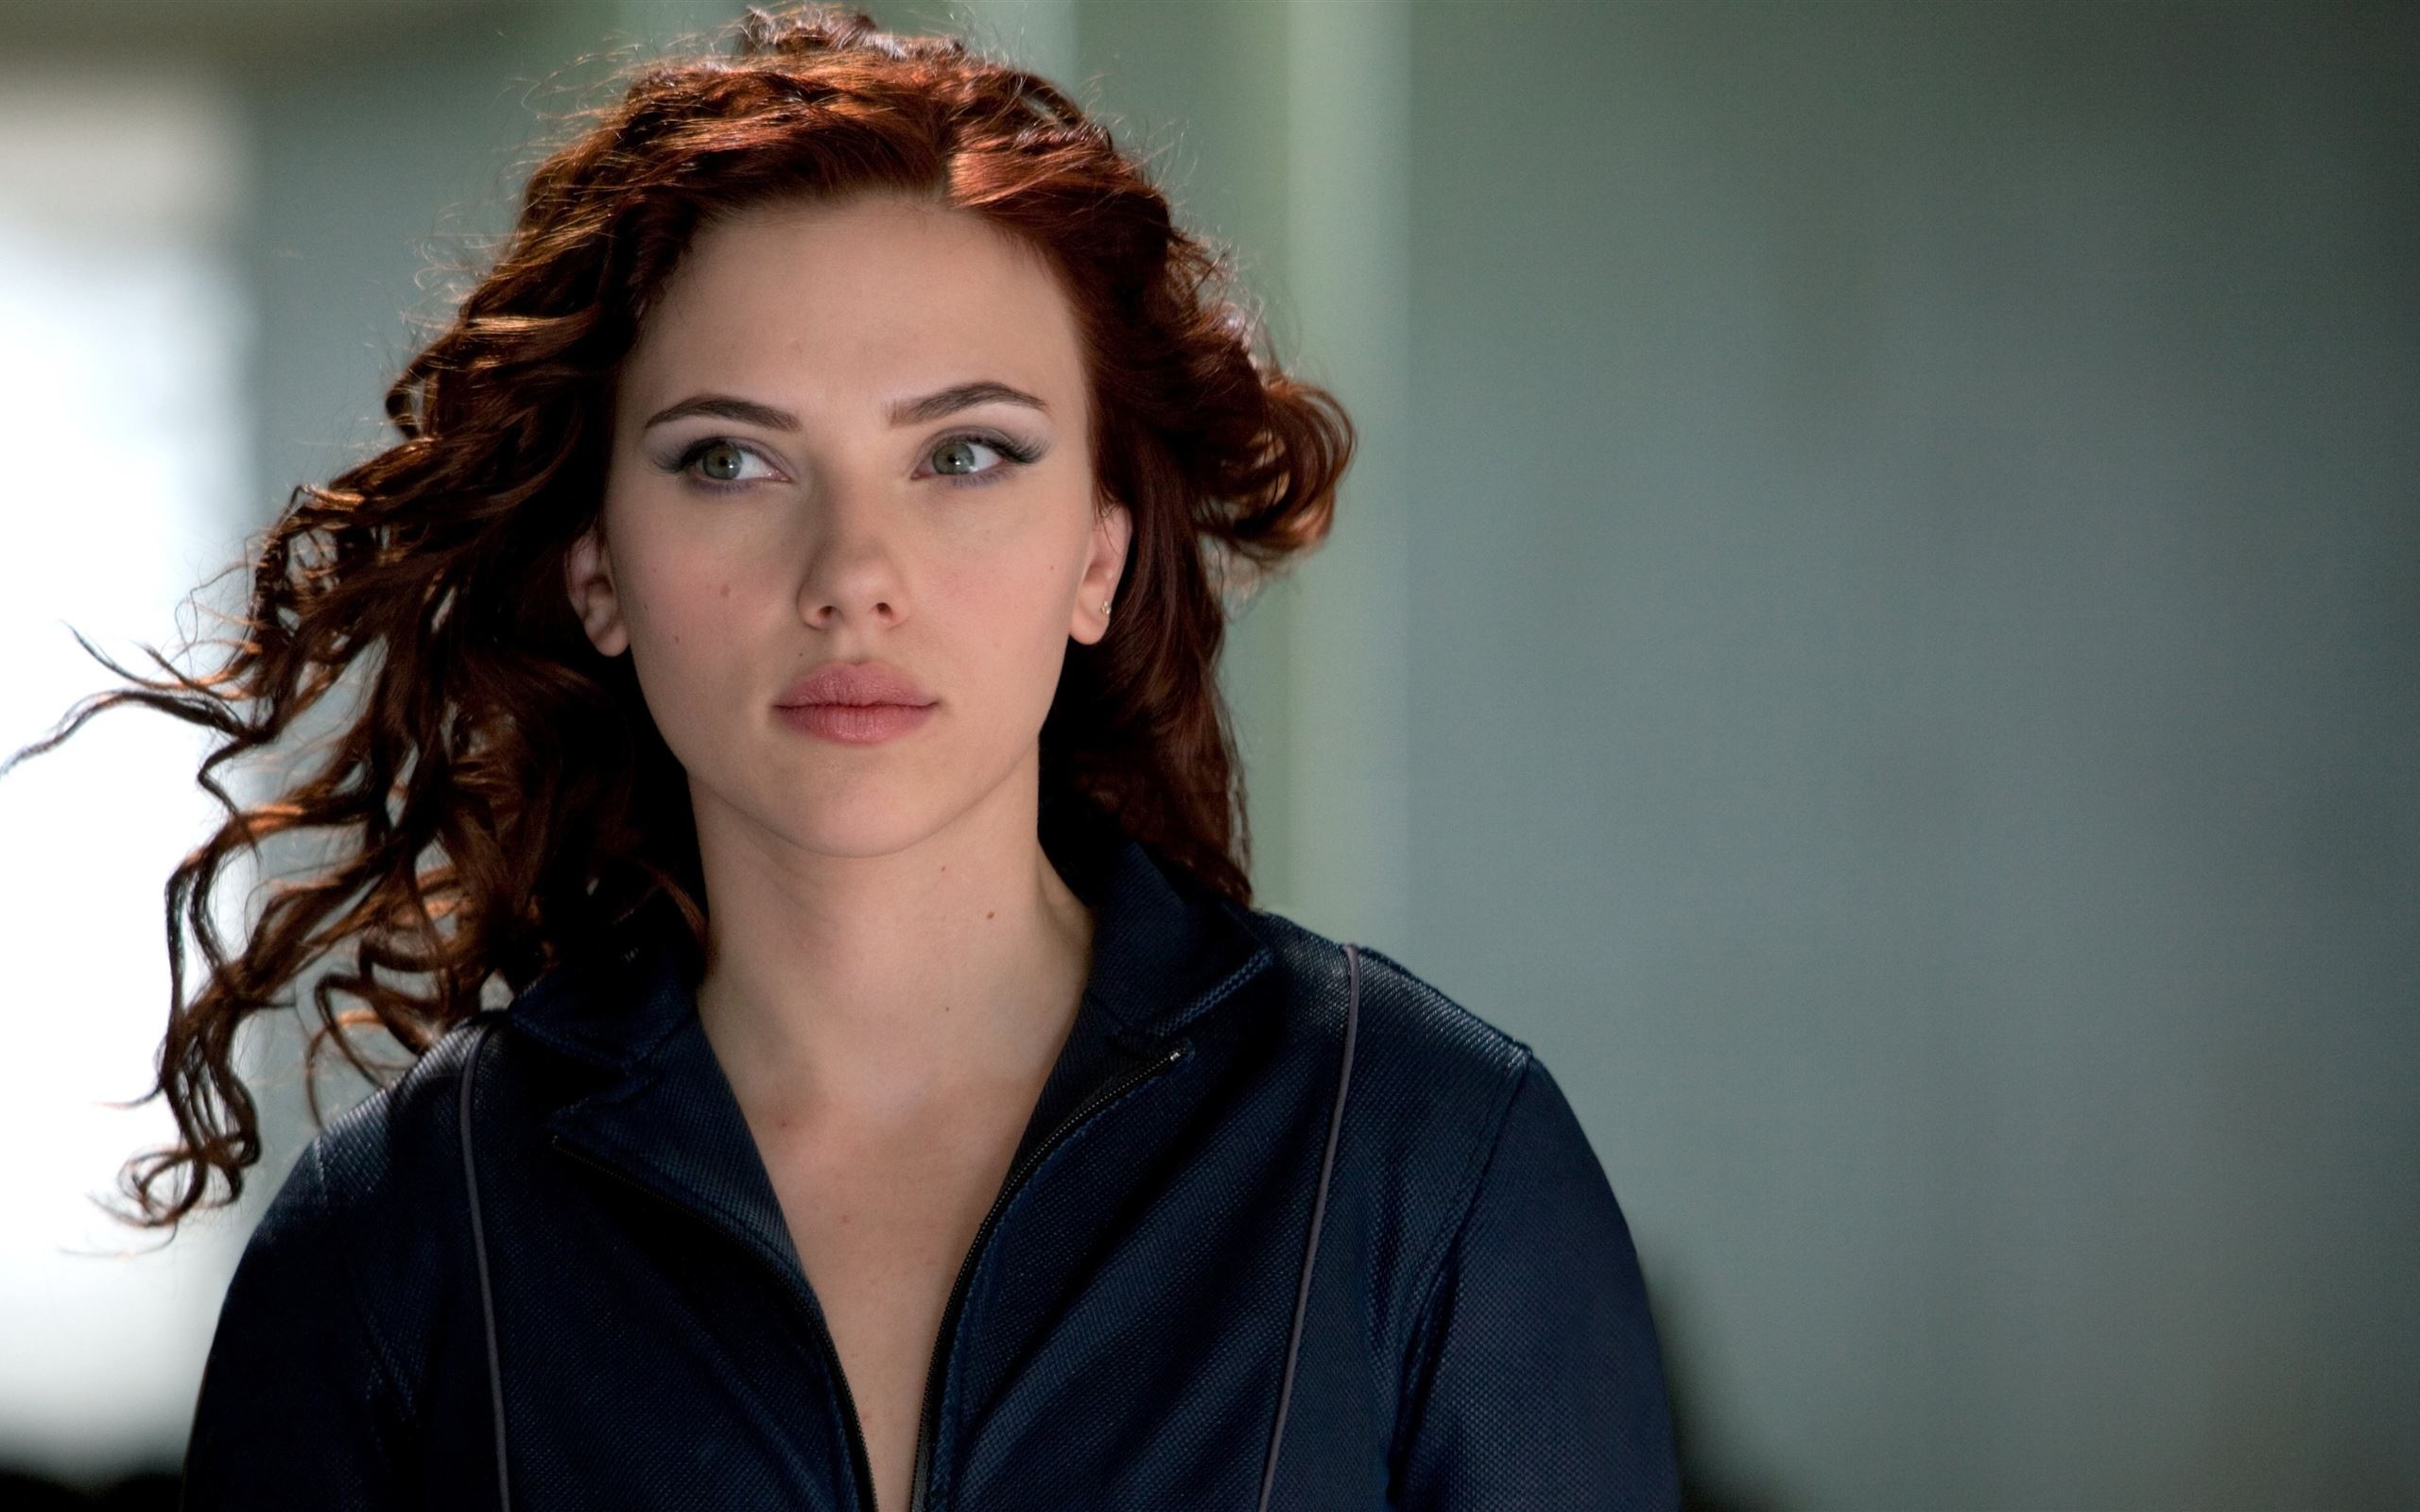 Scarlett Johansson, Black Widow, iMac wallpaper, Download, 2560x1600 HD Desktop